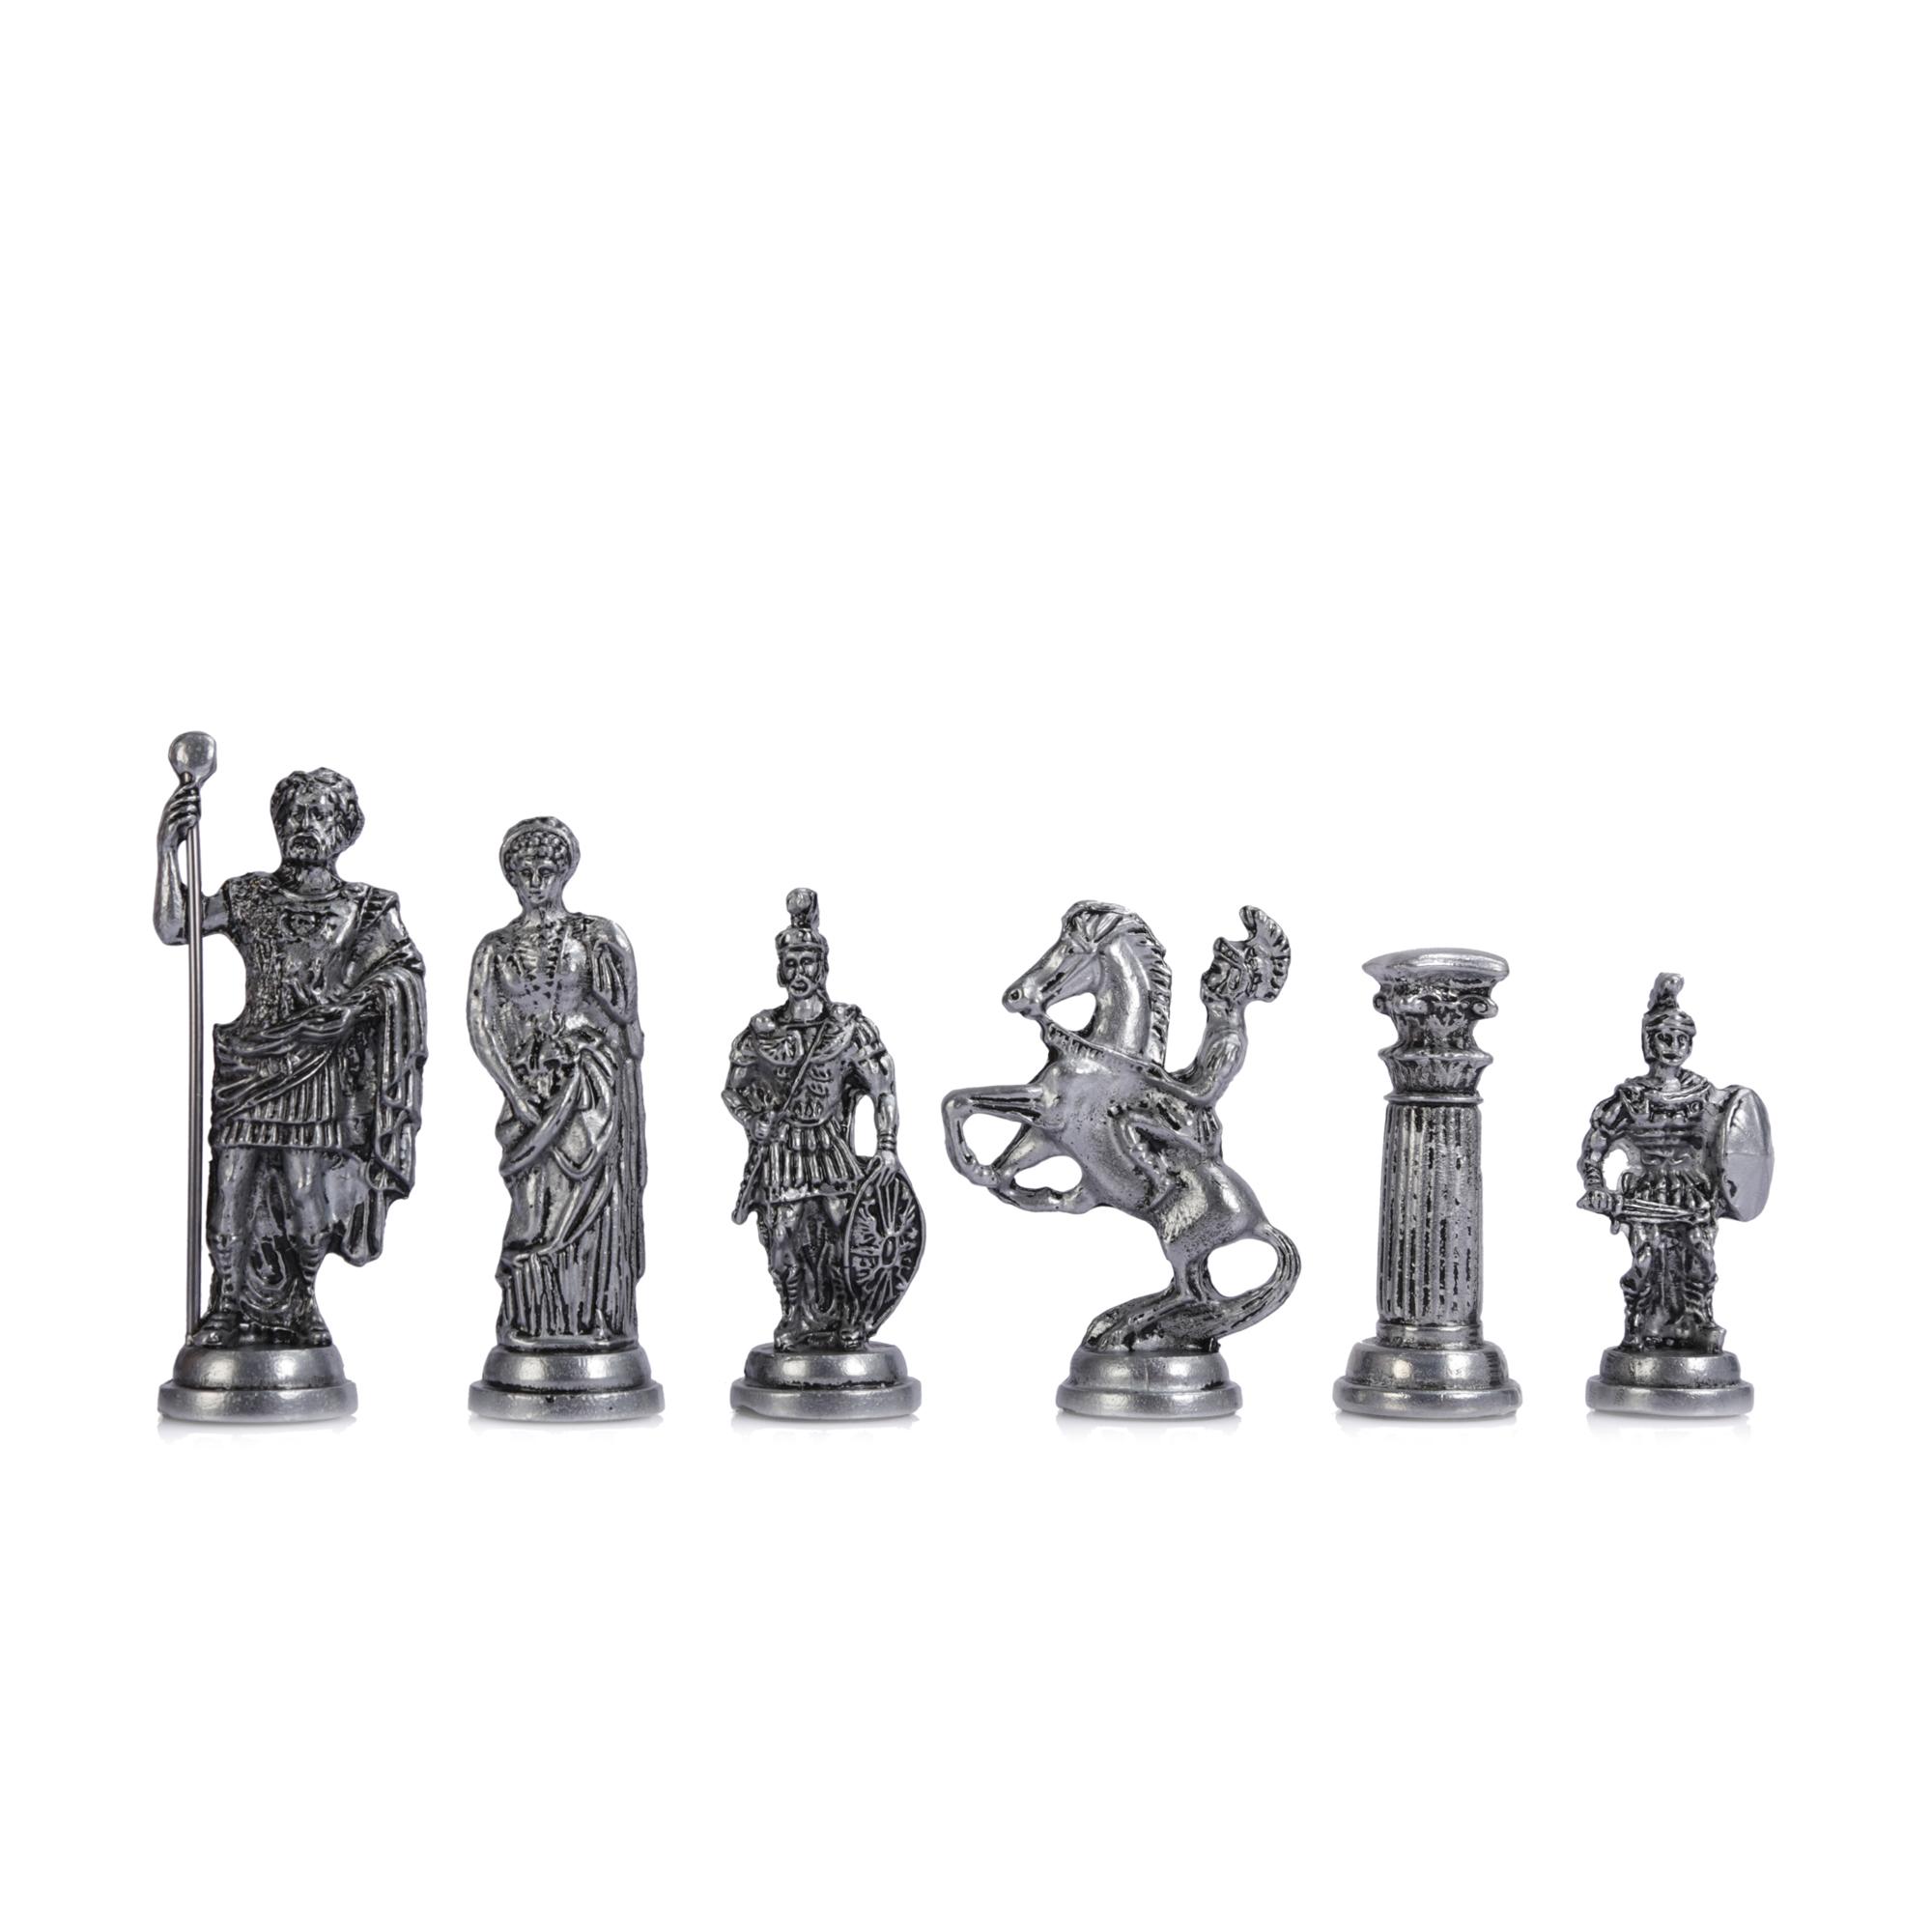 Изображение товара: (Только шахматные фигуры), старинная медная римская фигура, металлические шахматные фигуры ручной работы, большой размер 11 см (доска не входит в комплект)